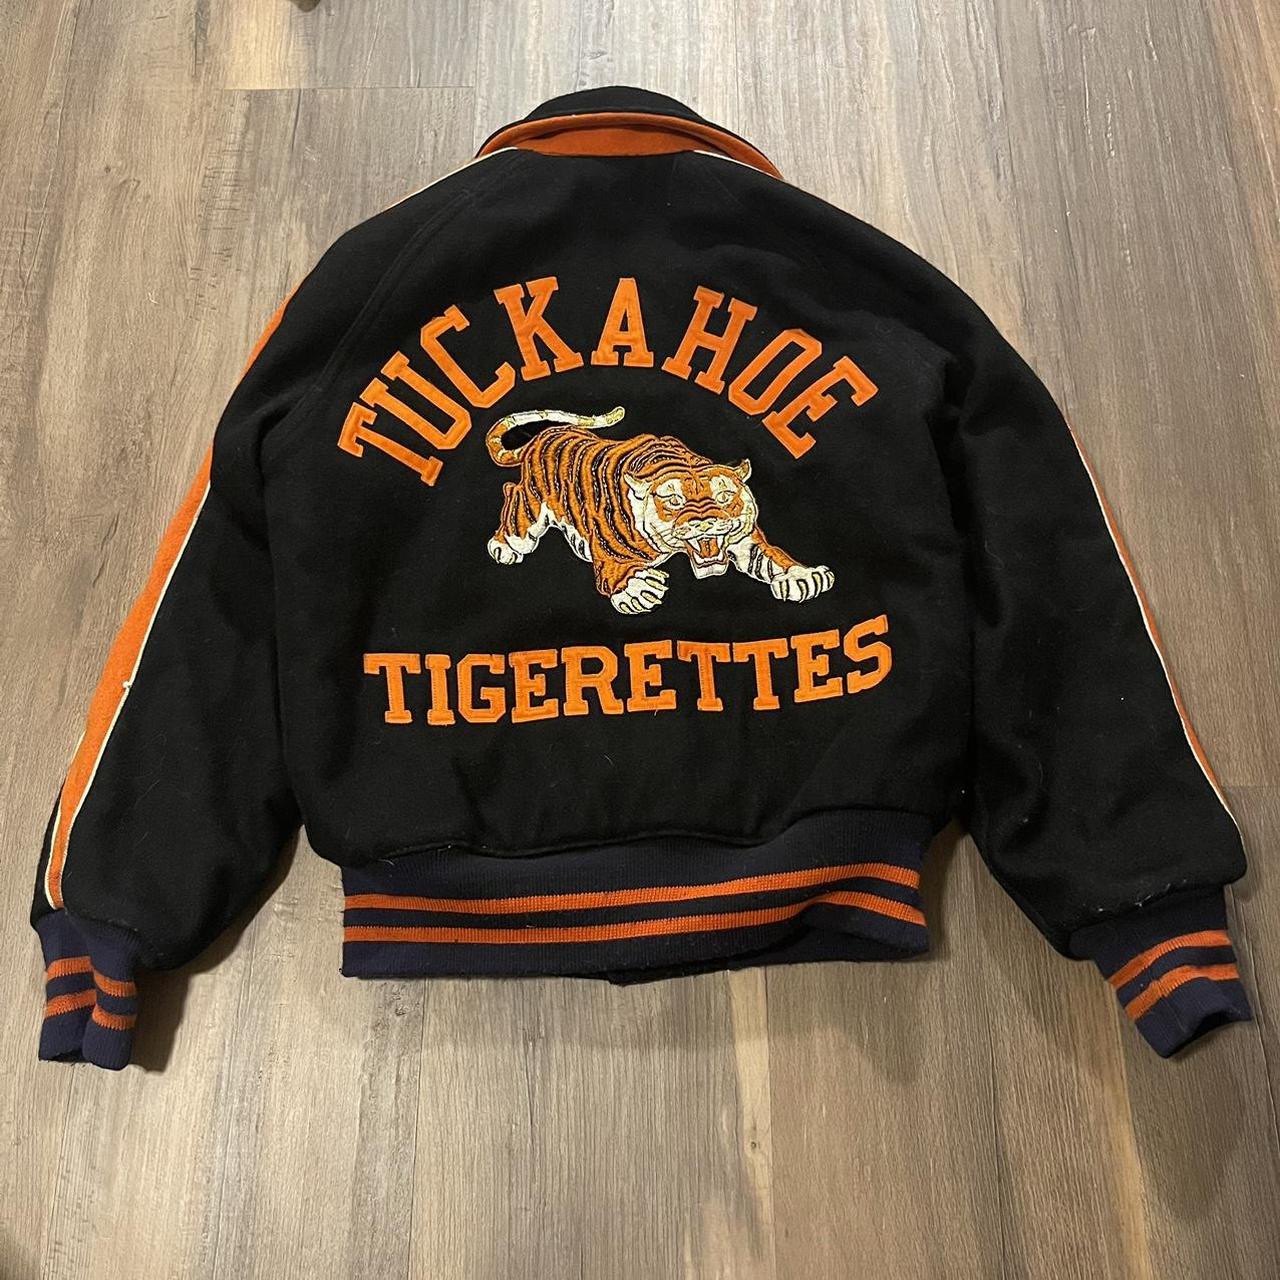 1950s 1960s Tuckahoe Tiger variety coat Inside has... - Depop